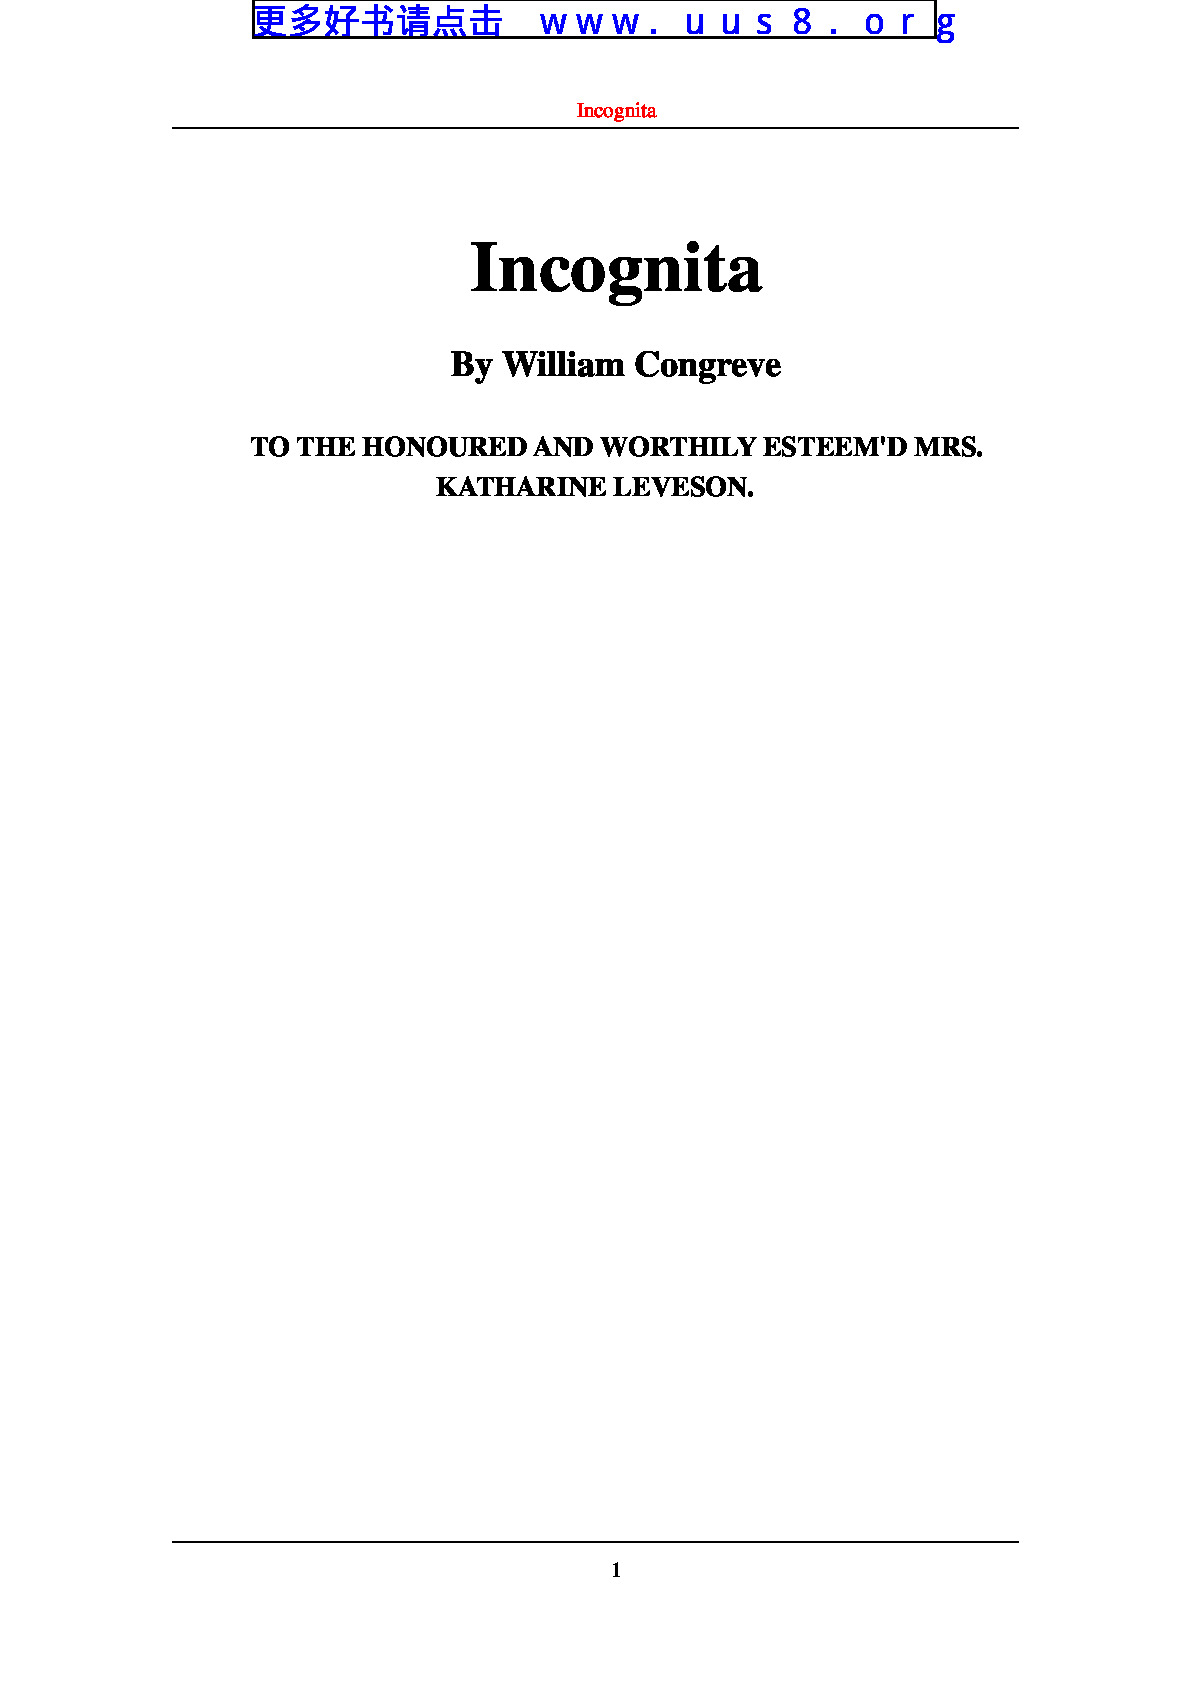 Incognita(隐姓埋名)